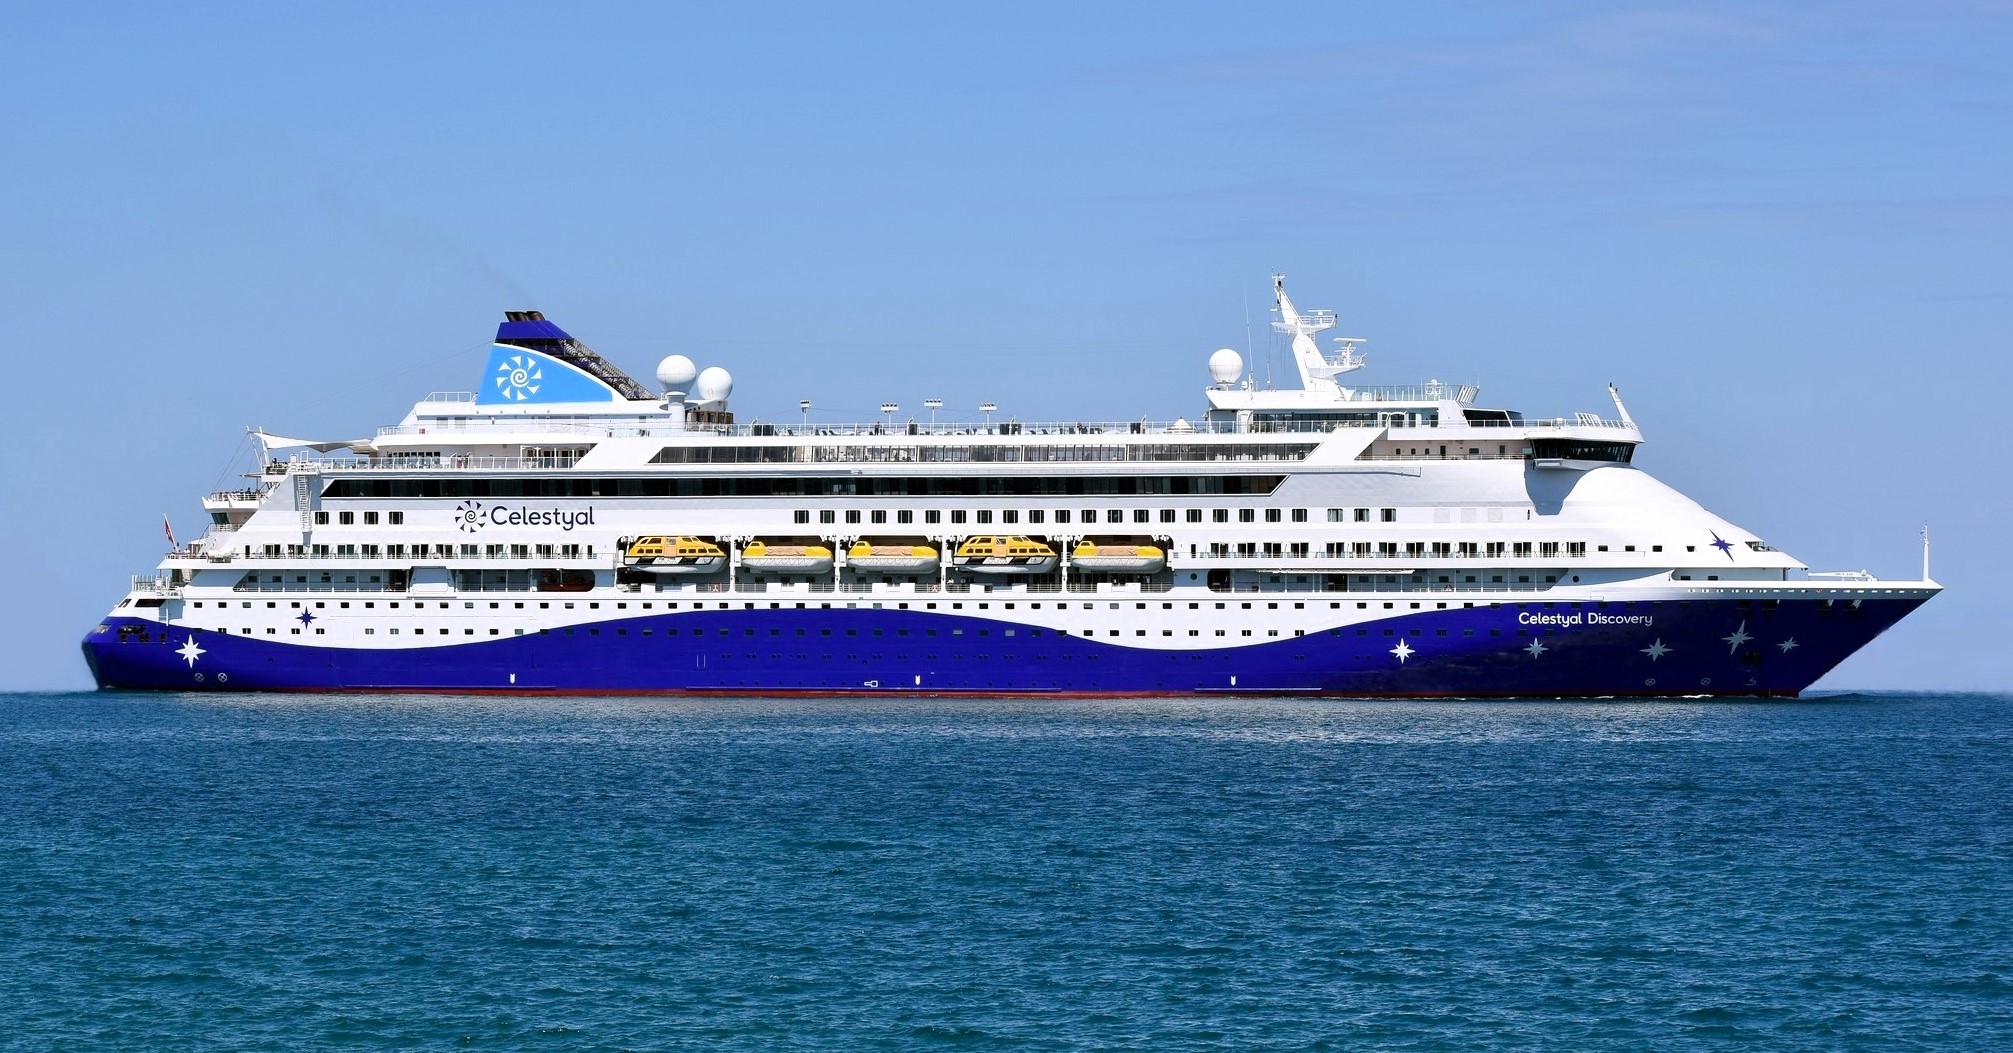 Celestyal Discovery  Yunan Adaları & Atina Yaz Program 3 Gece (Inclusive Cruise)